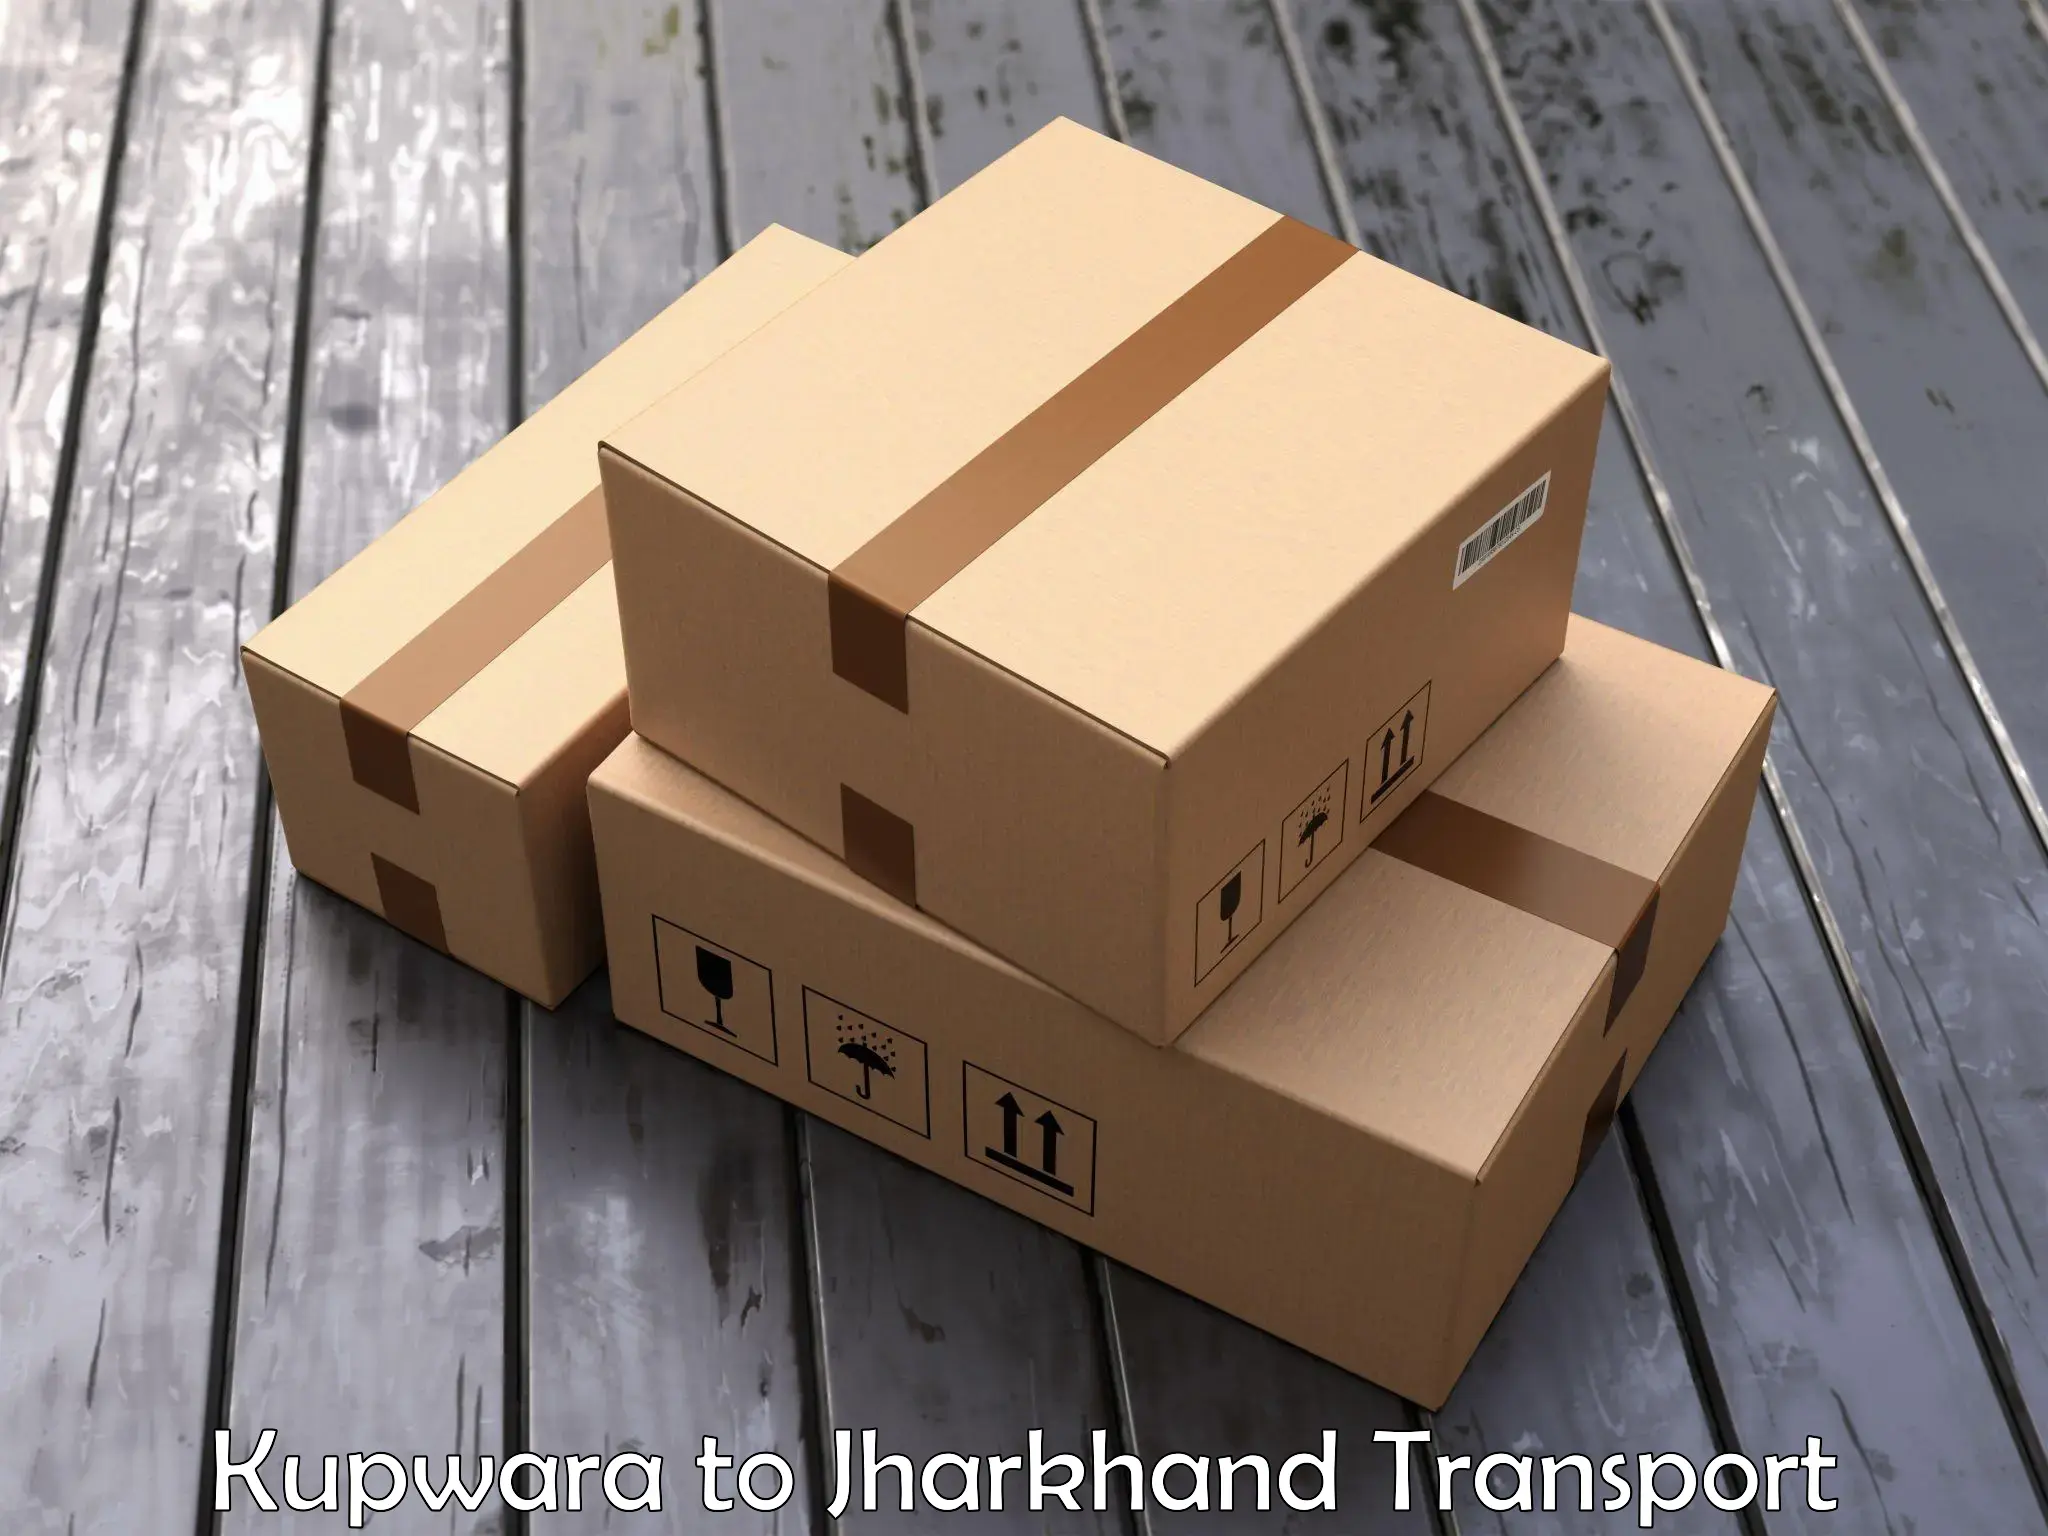 Part load transport service in India Kupwara to Mahagama